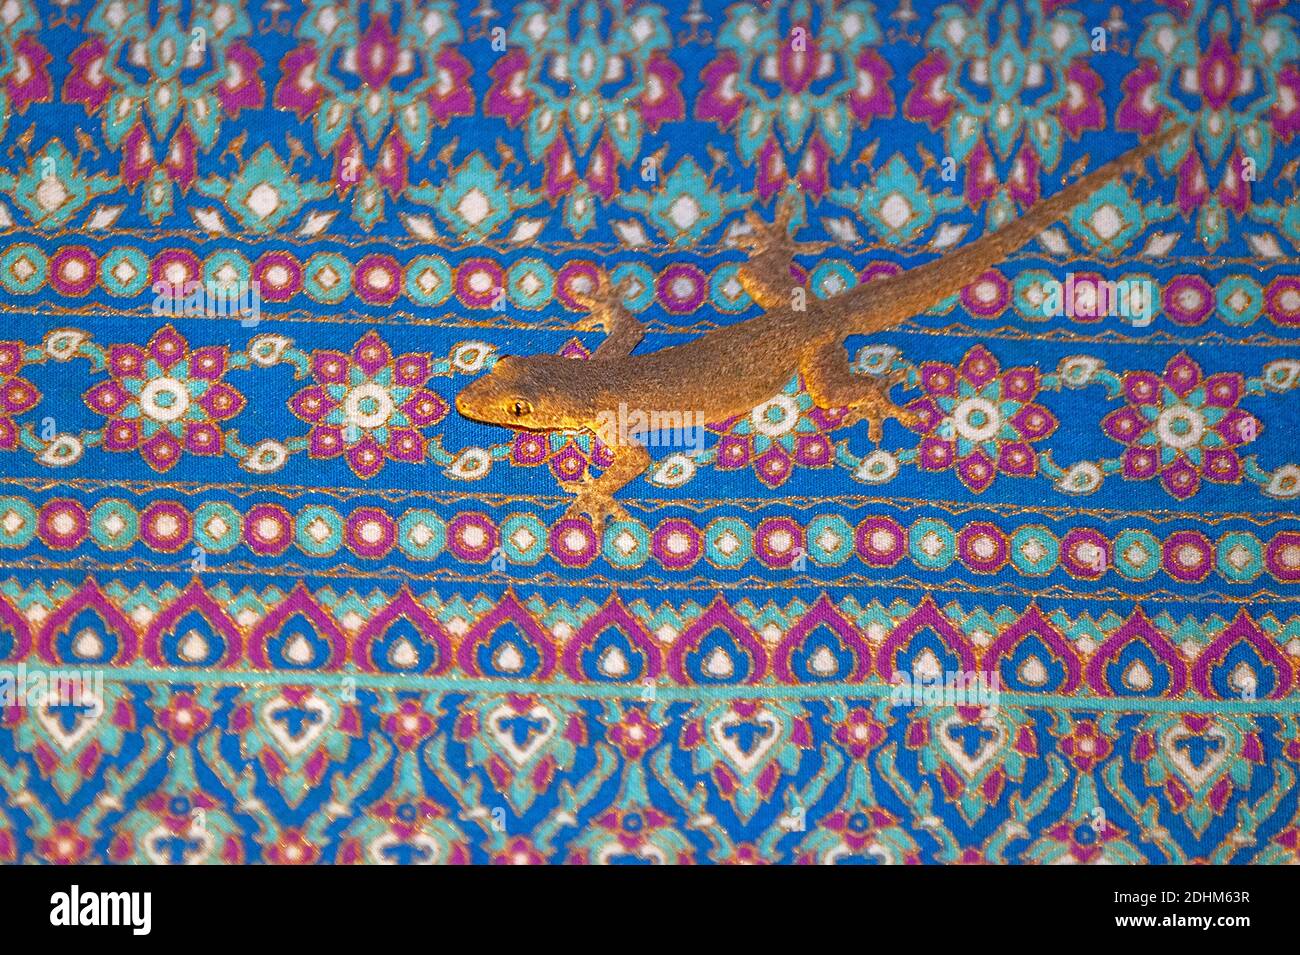 Gemeiner Hausgecko (Hemidactylus frenatus) auf einem bunten Teppich in einer Lodge in Sepilko, Sabah, Borneo sitzend. Stockfoto